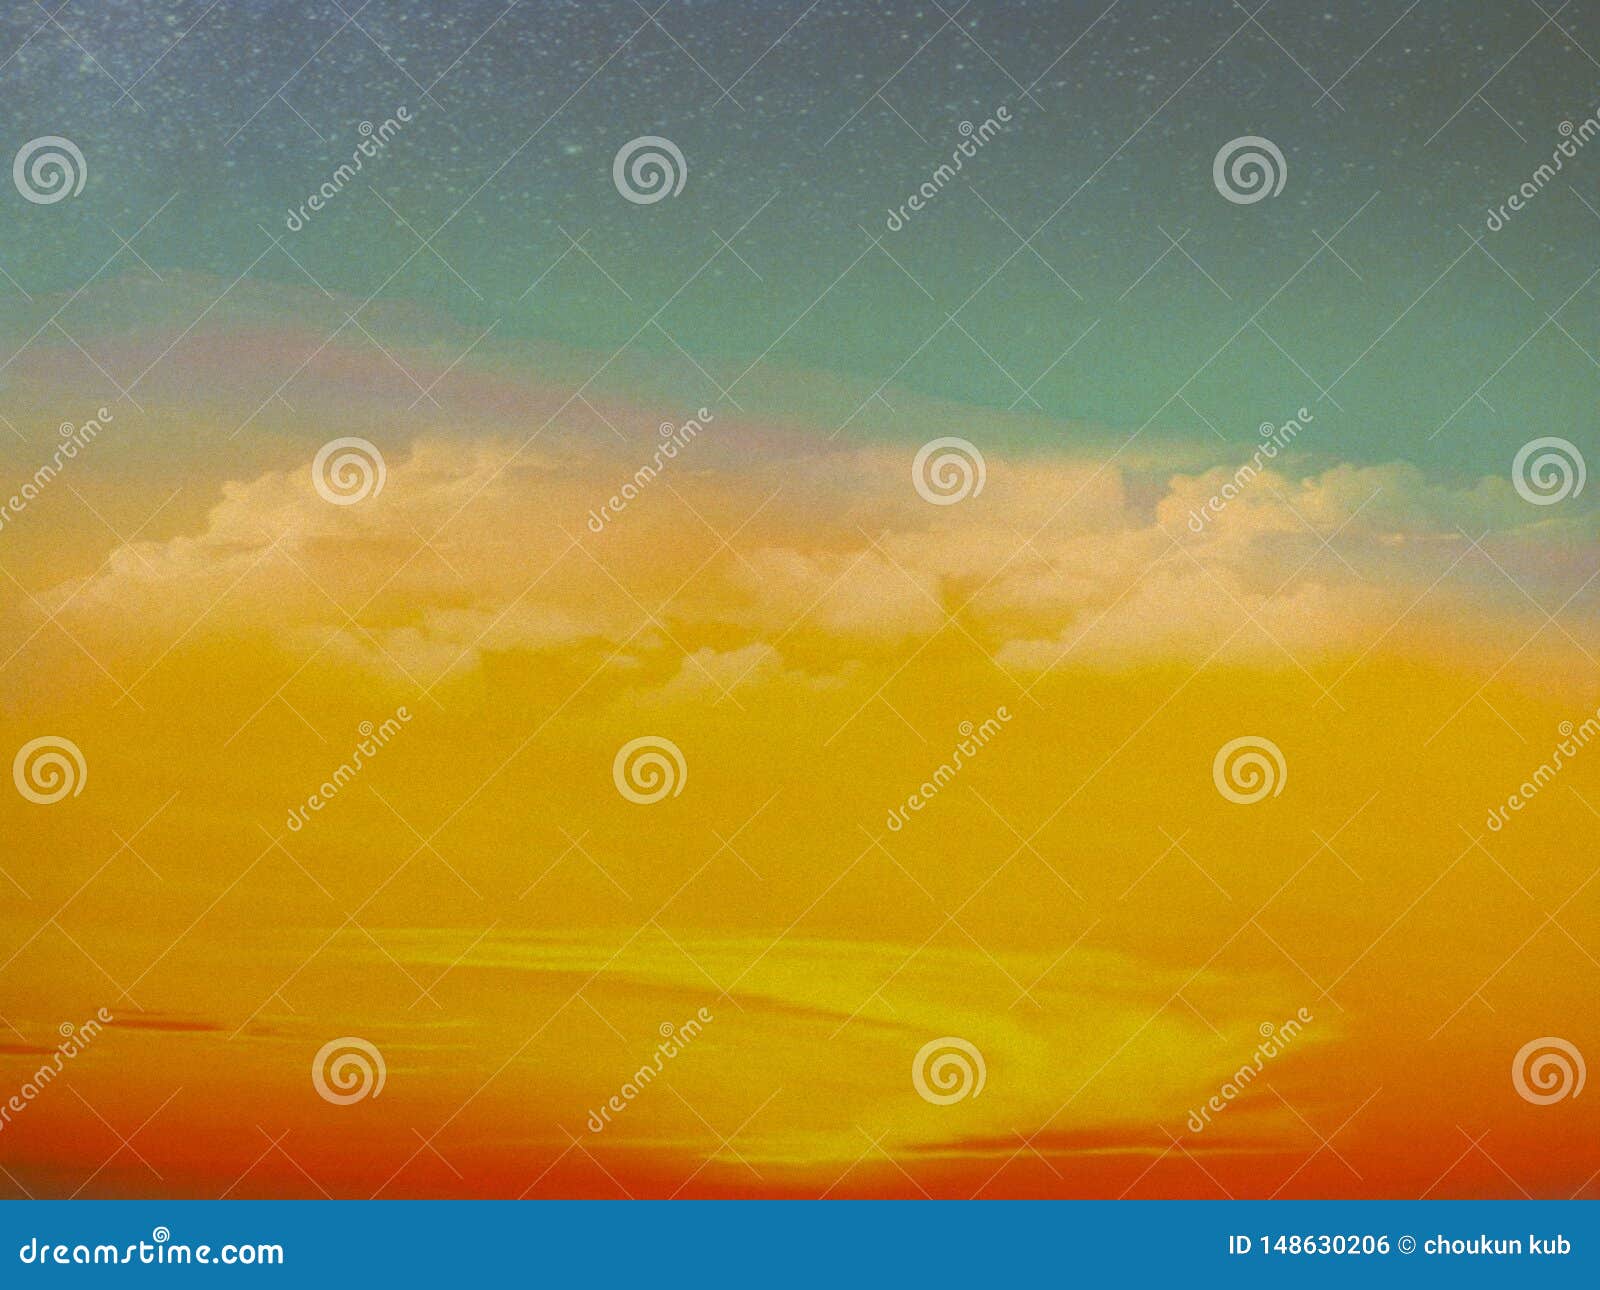 Nature Cloud HD Wallpaper